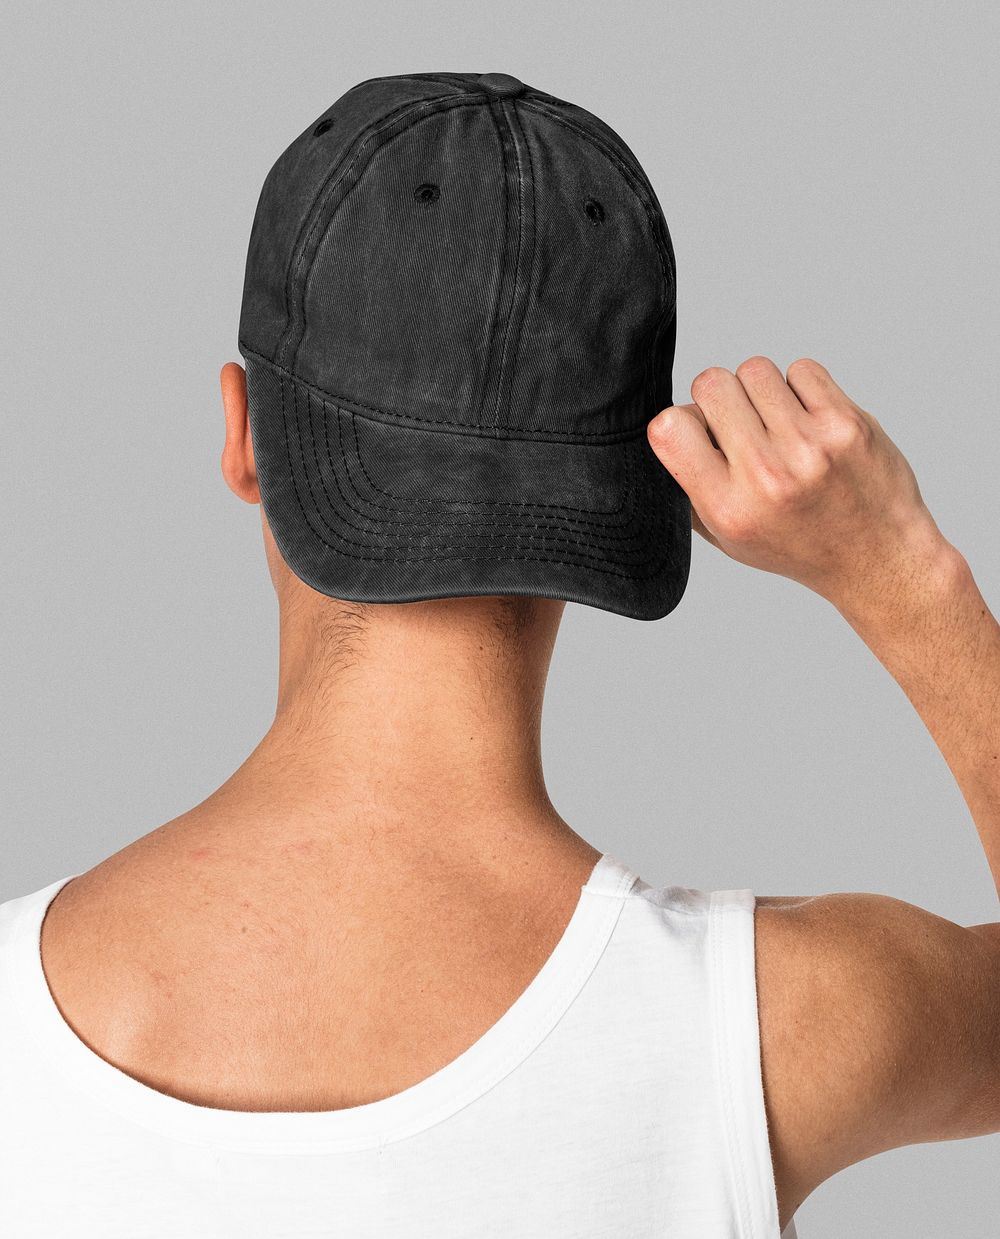 Black cap mockup psd streetwear shoot